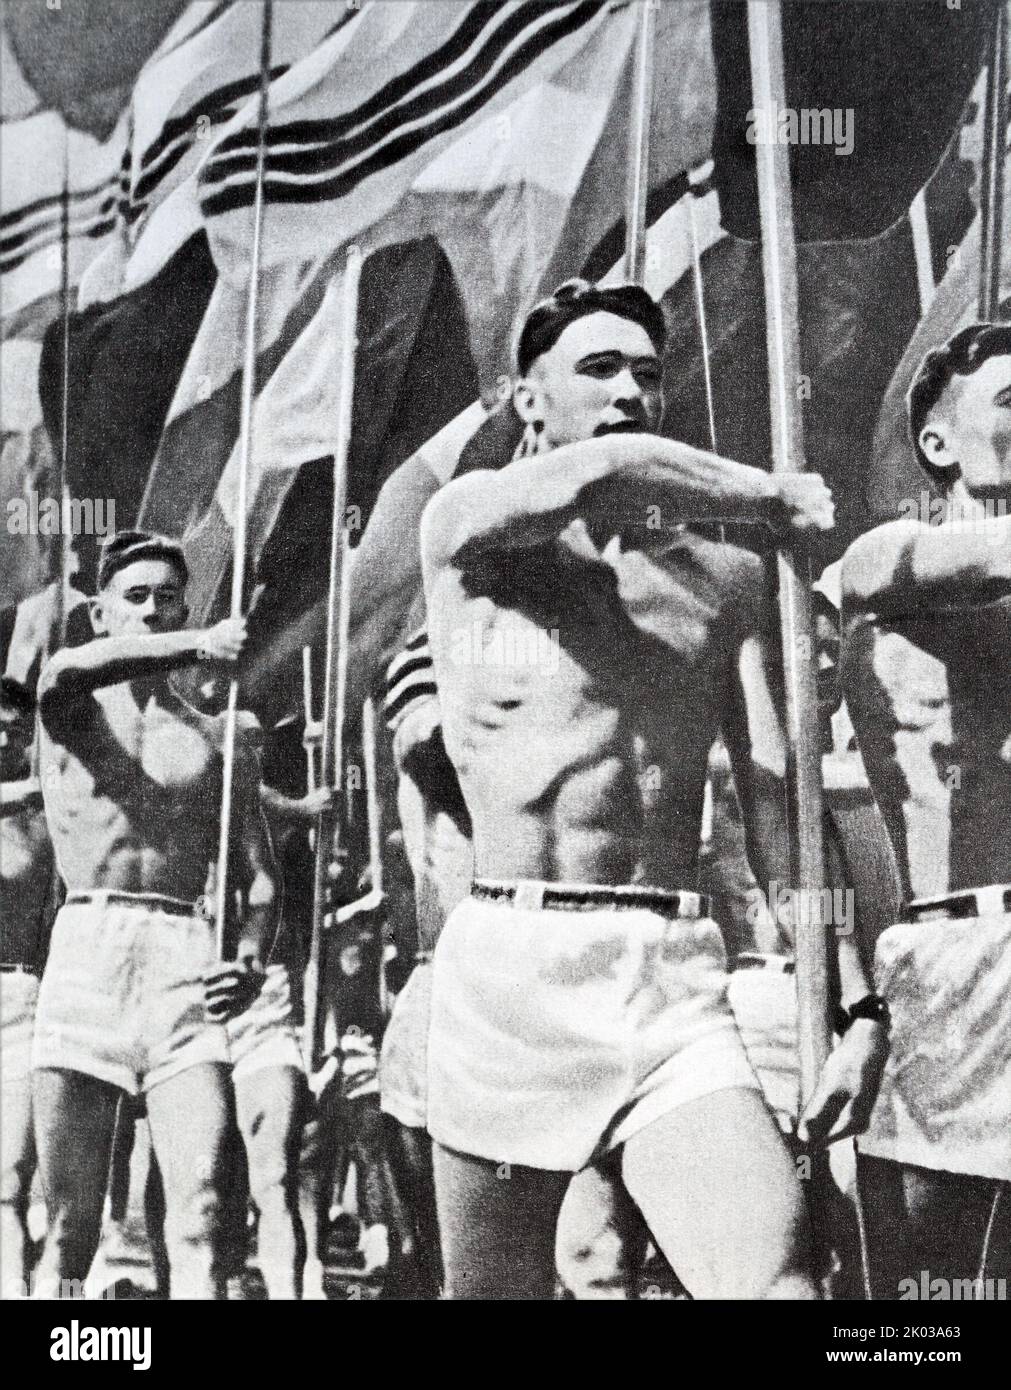 Propaganda fotografia di atleti sovietici in un evento sportivo. 1962 Foto Stock